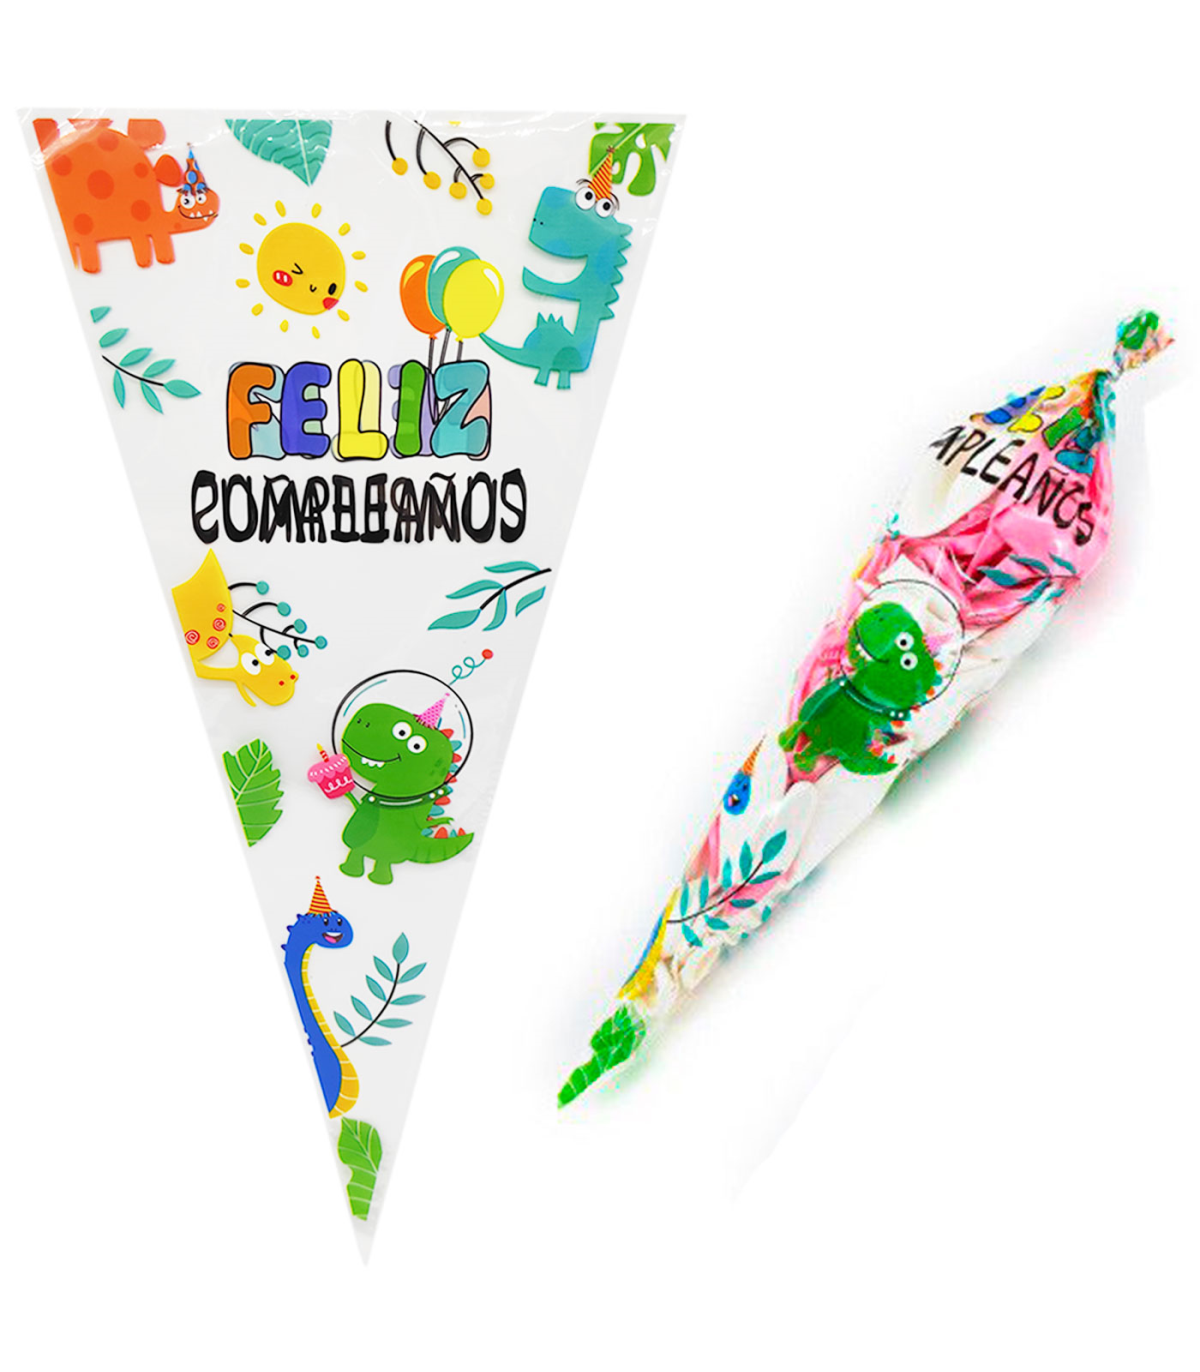 Levántate sitio Continental Tradineur - Pack de 10 bolsas de plástico para caramelos "Feliz cumpleaños",  incluyen tiras de cierre, bolsas para regalar golos